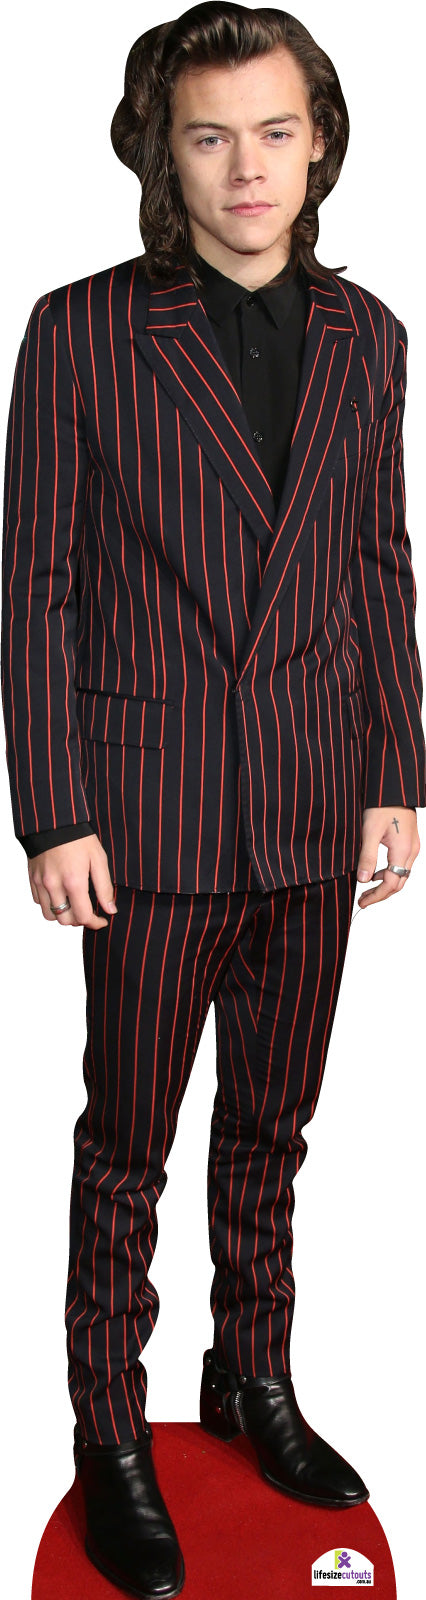 Harry Styles in Red Stripe Suit 562 Cardboard Cutout